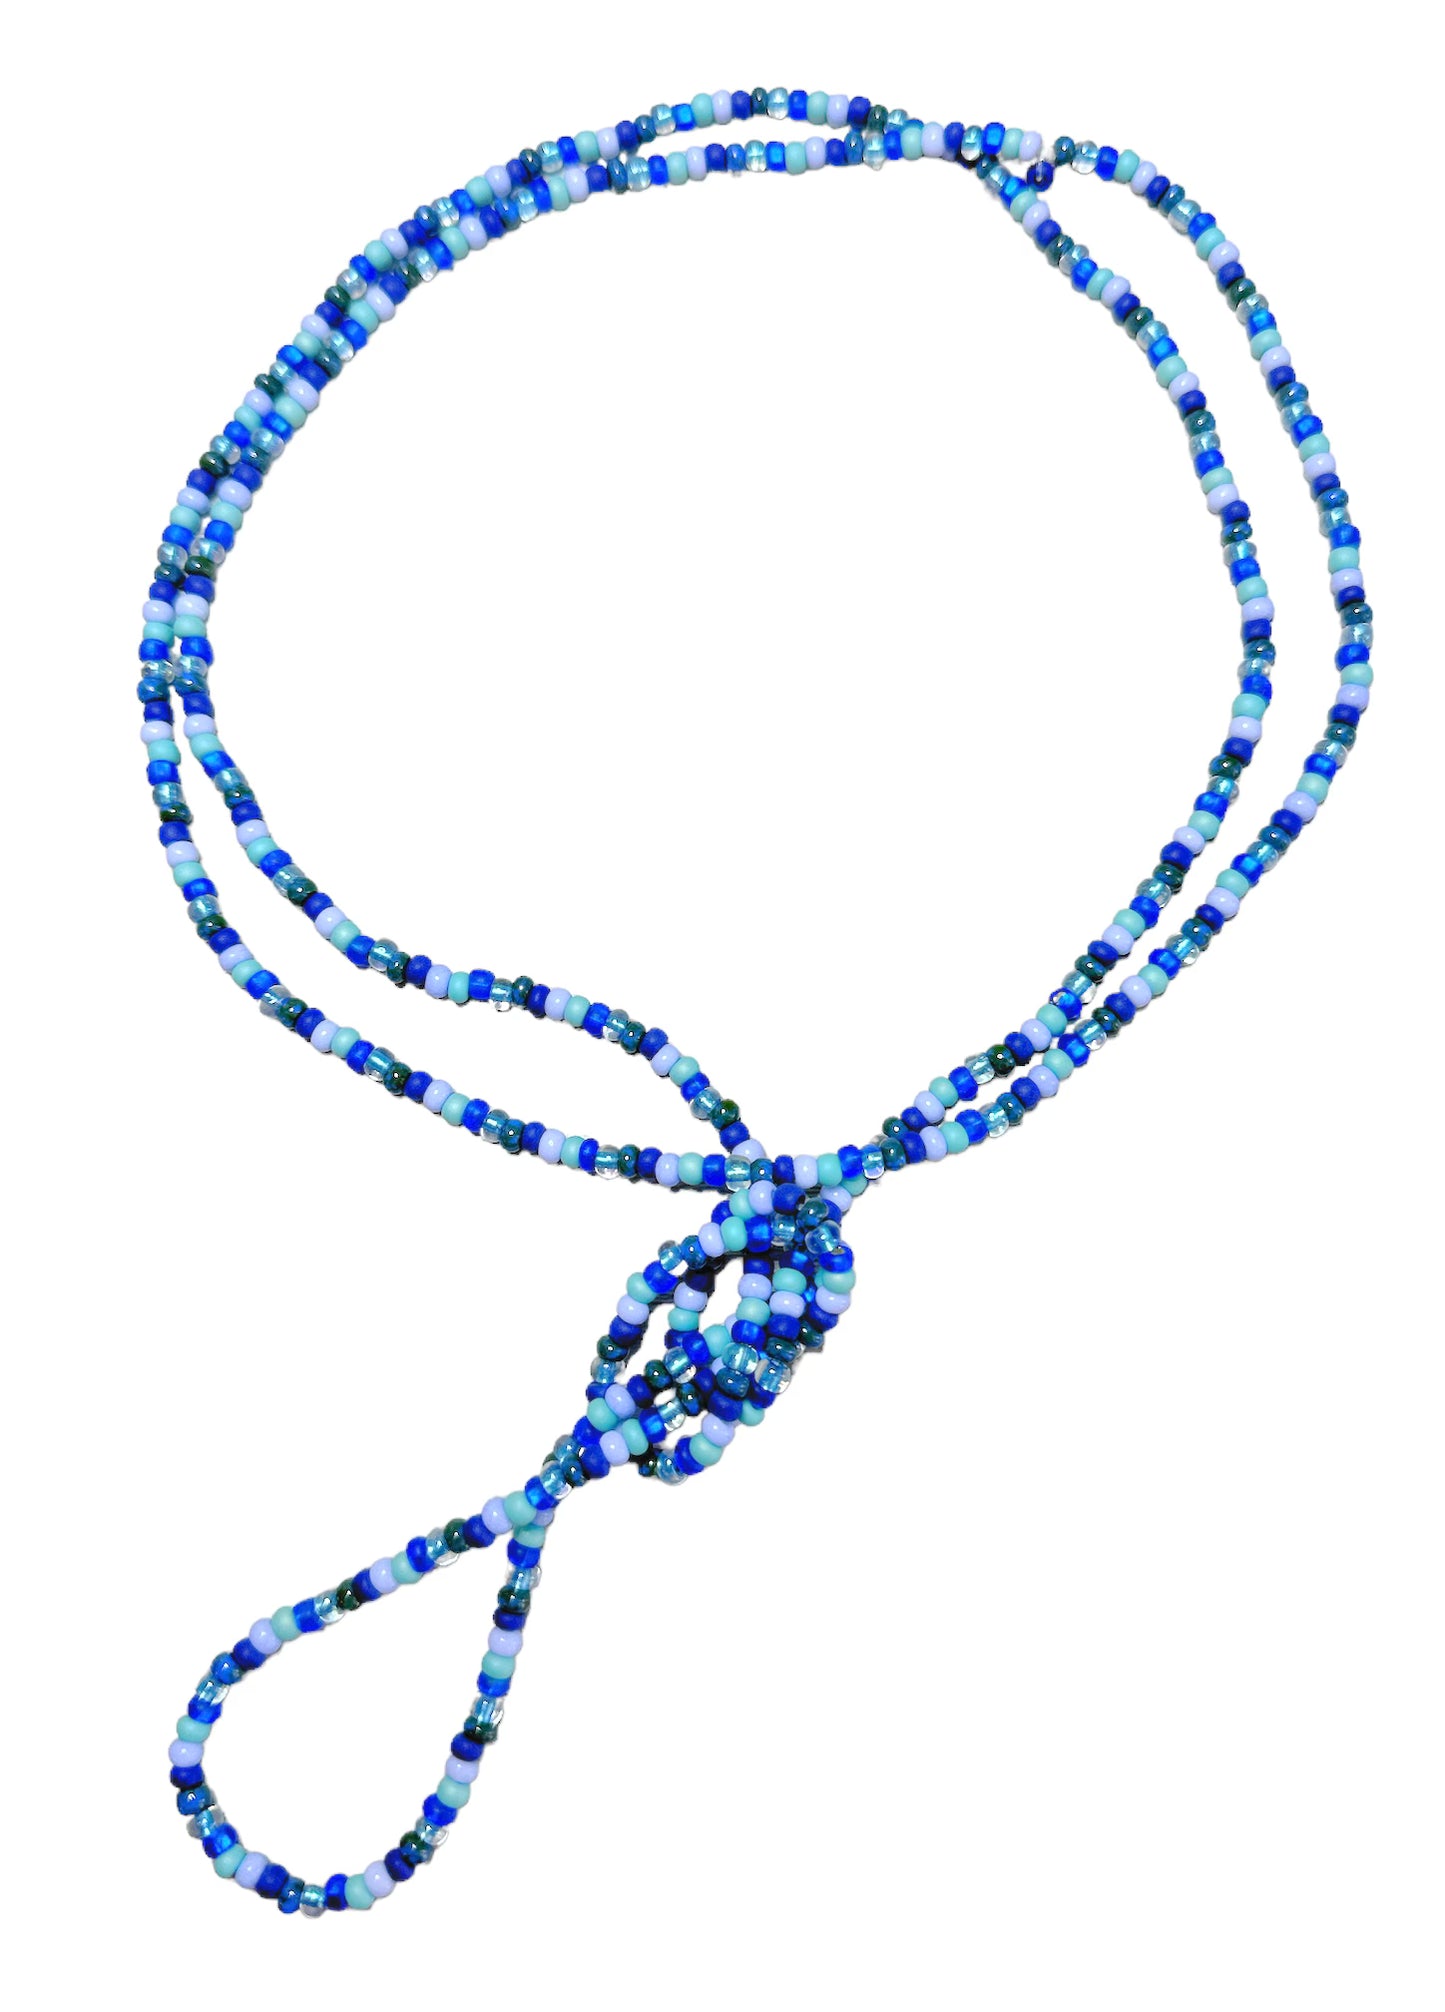 Celeste Wrap Bracelet/Necklace